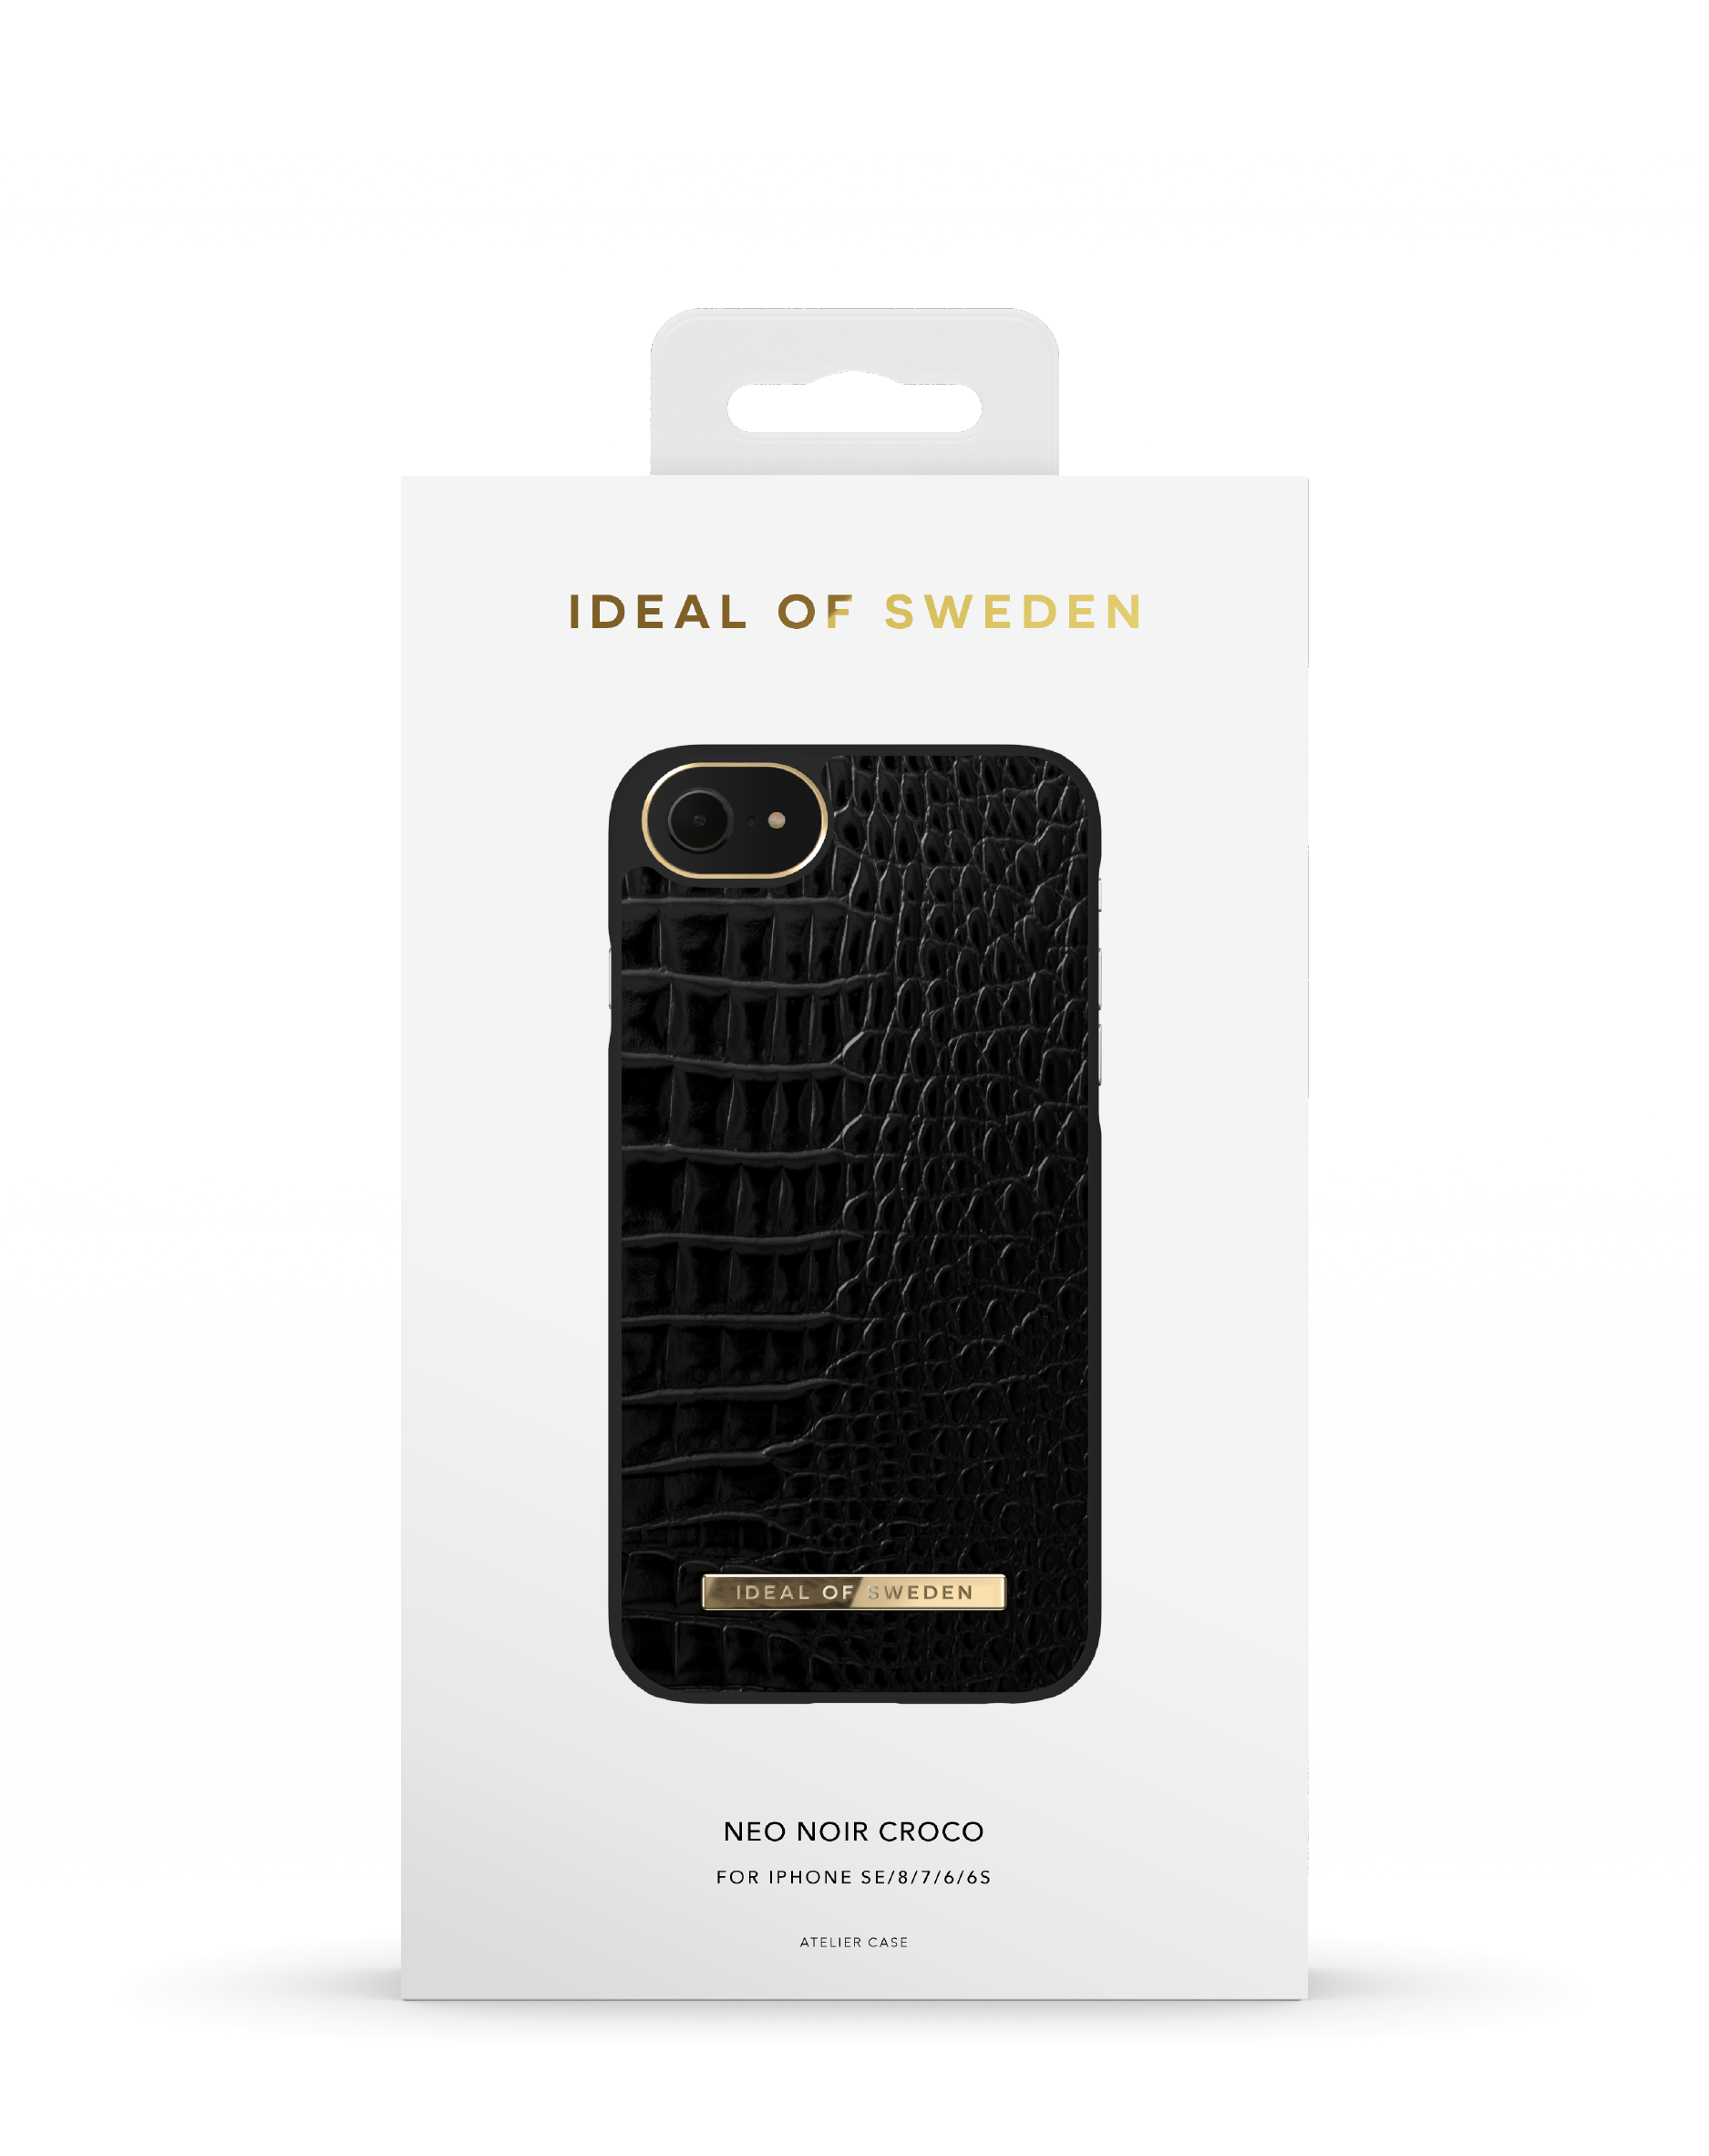 IDEAL OF SWEDEN IDNCAW20-I7-236, Umhängetasche, 6(S), 7, (2020), Apple Croco Neo 8, SE Apple, Apple Apple Apple Noir iPhone iPhone iPhone iPhone